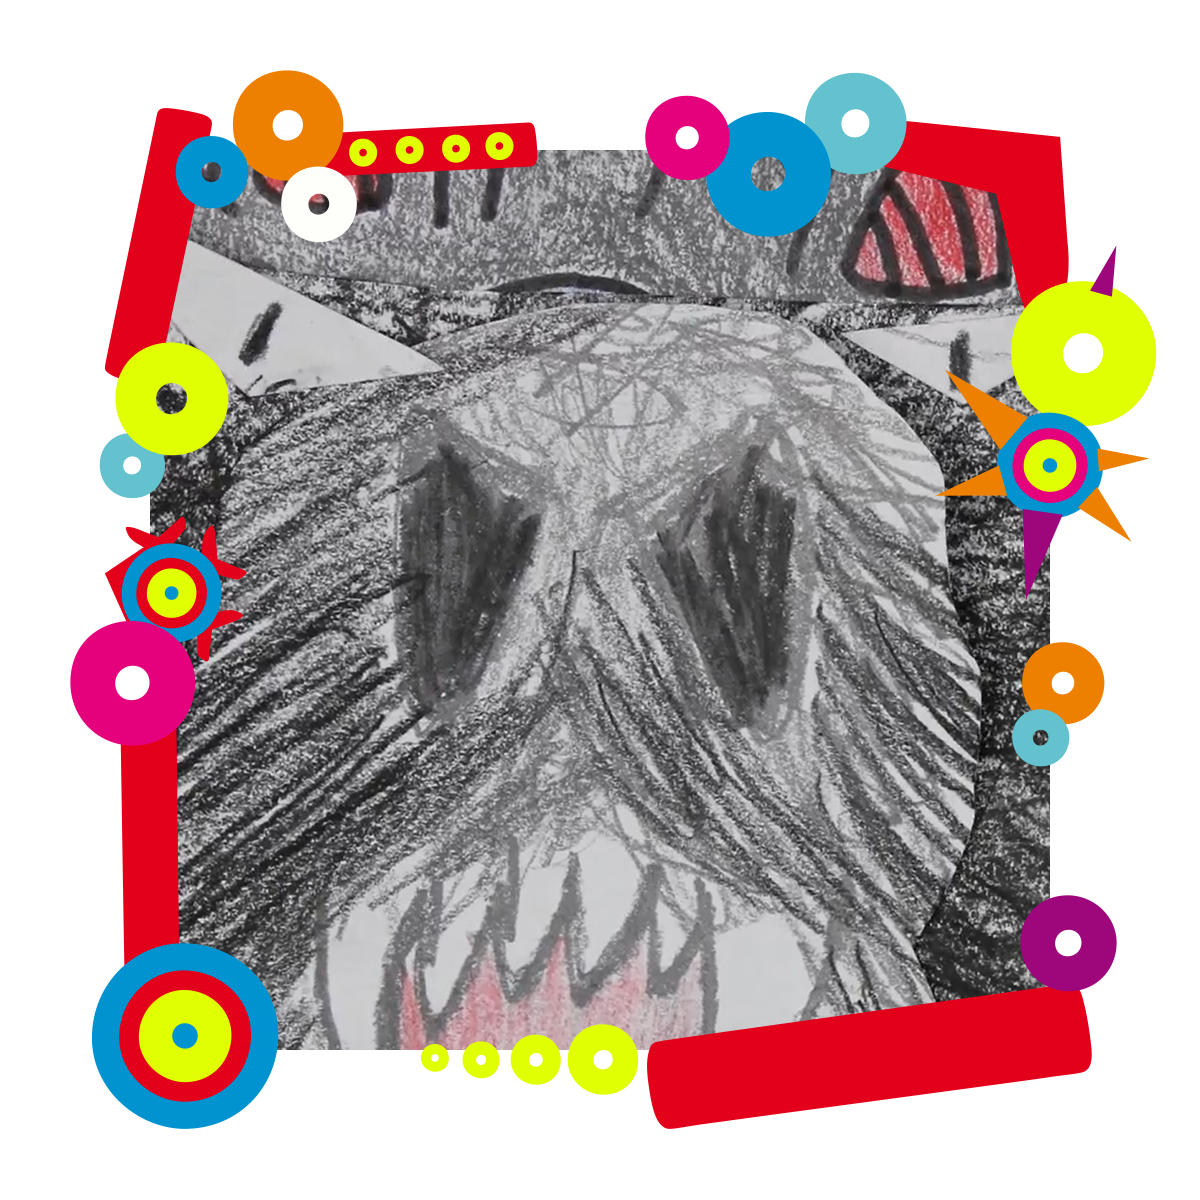 Kolaż zrobiony z wycinanek. Przedstawia głowę wilka, który wystawia zęby. Dookoła zdjęcia kolorowa grafika.